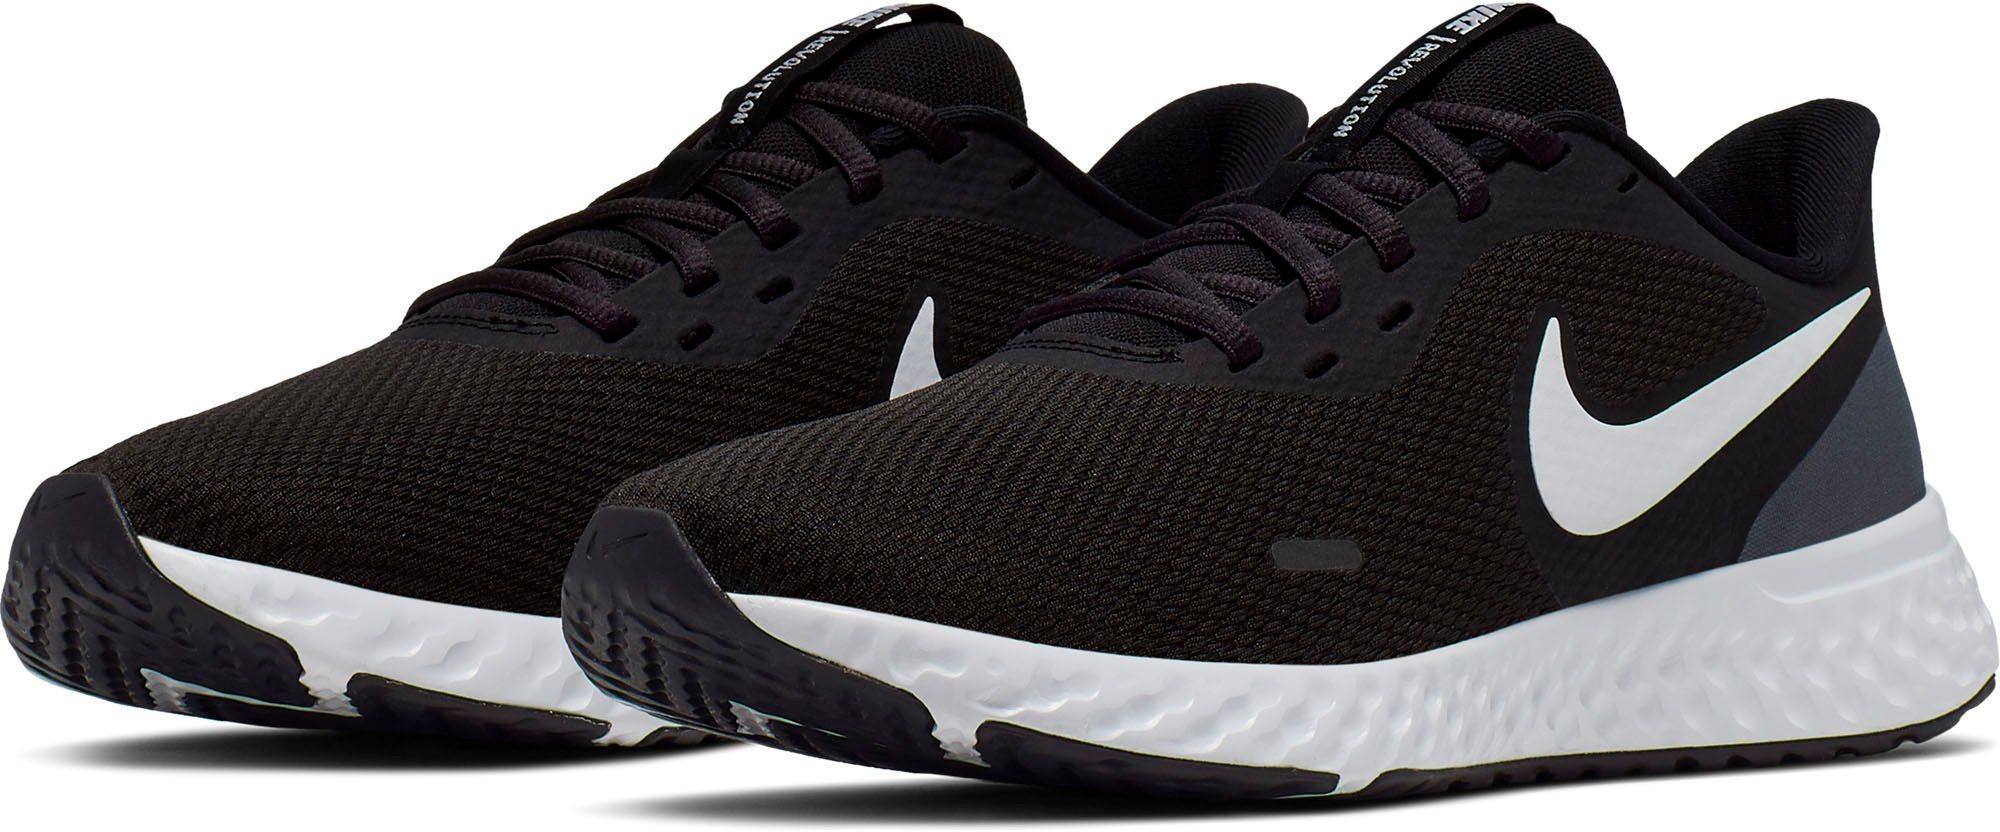 Nike Wmns Revolution 5 Laufschuh, Gummi-Außensohle bietet dauerhafte  Traktion auf einer Vielzahl von Oberflächen